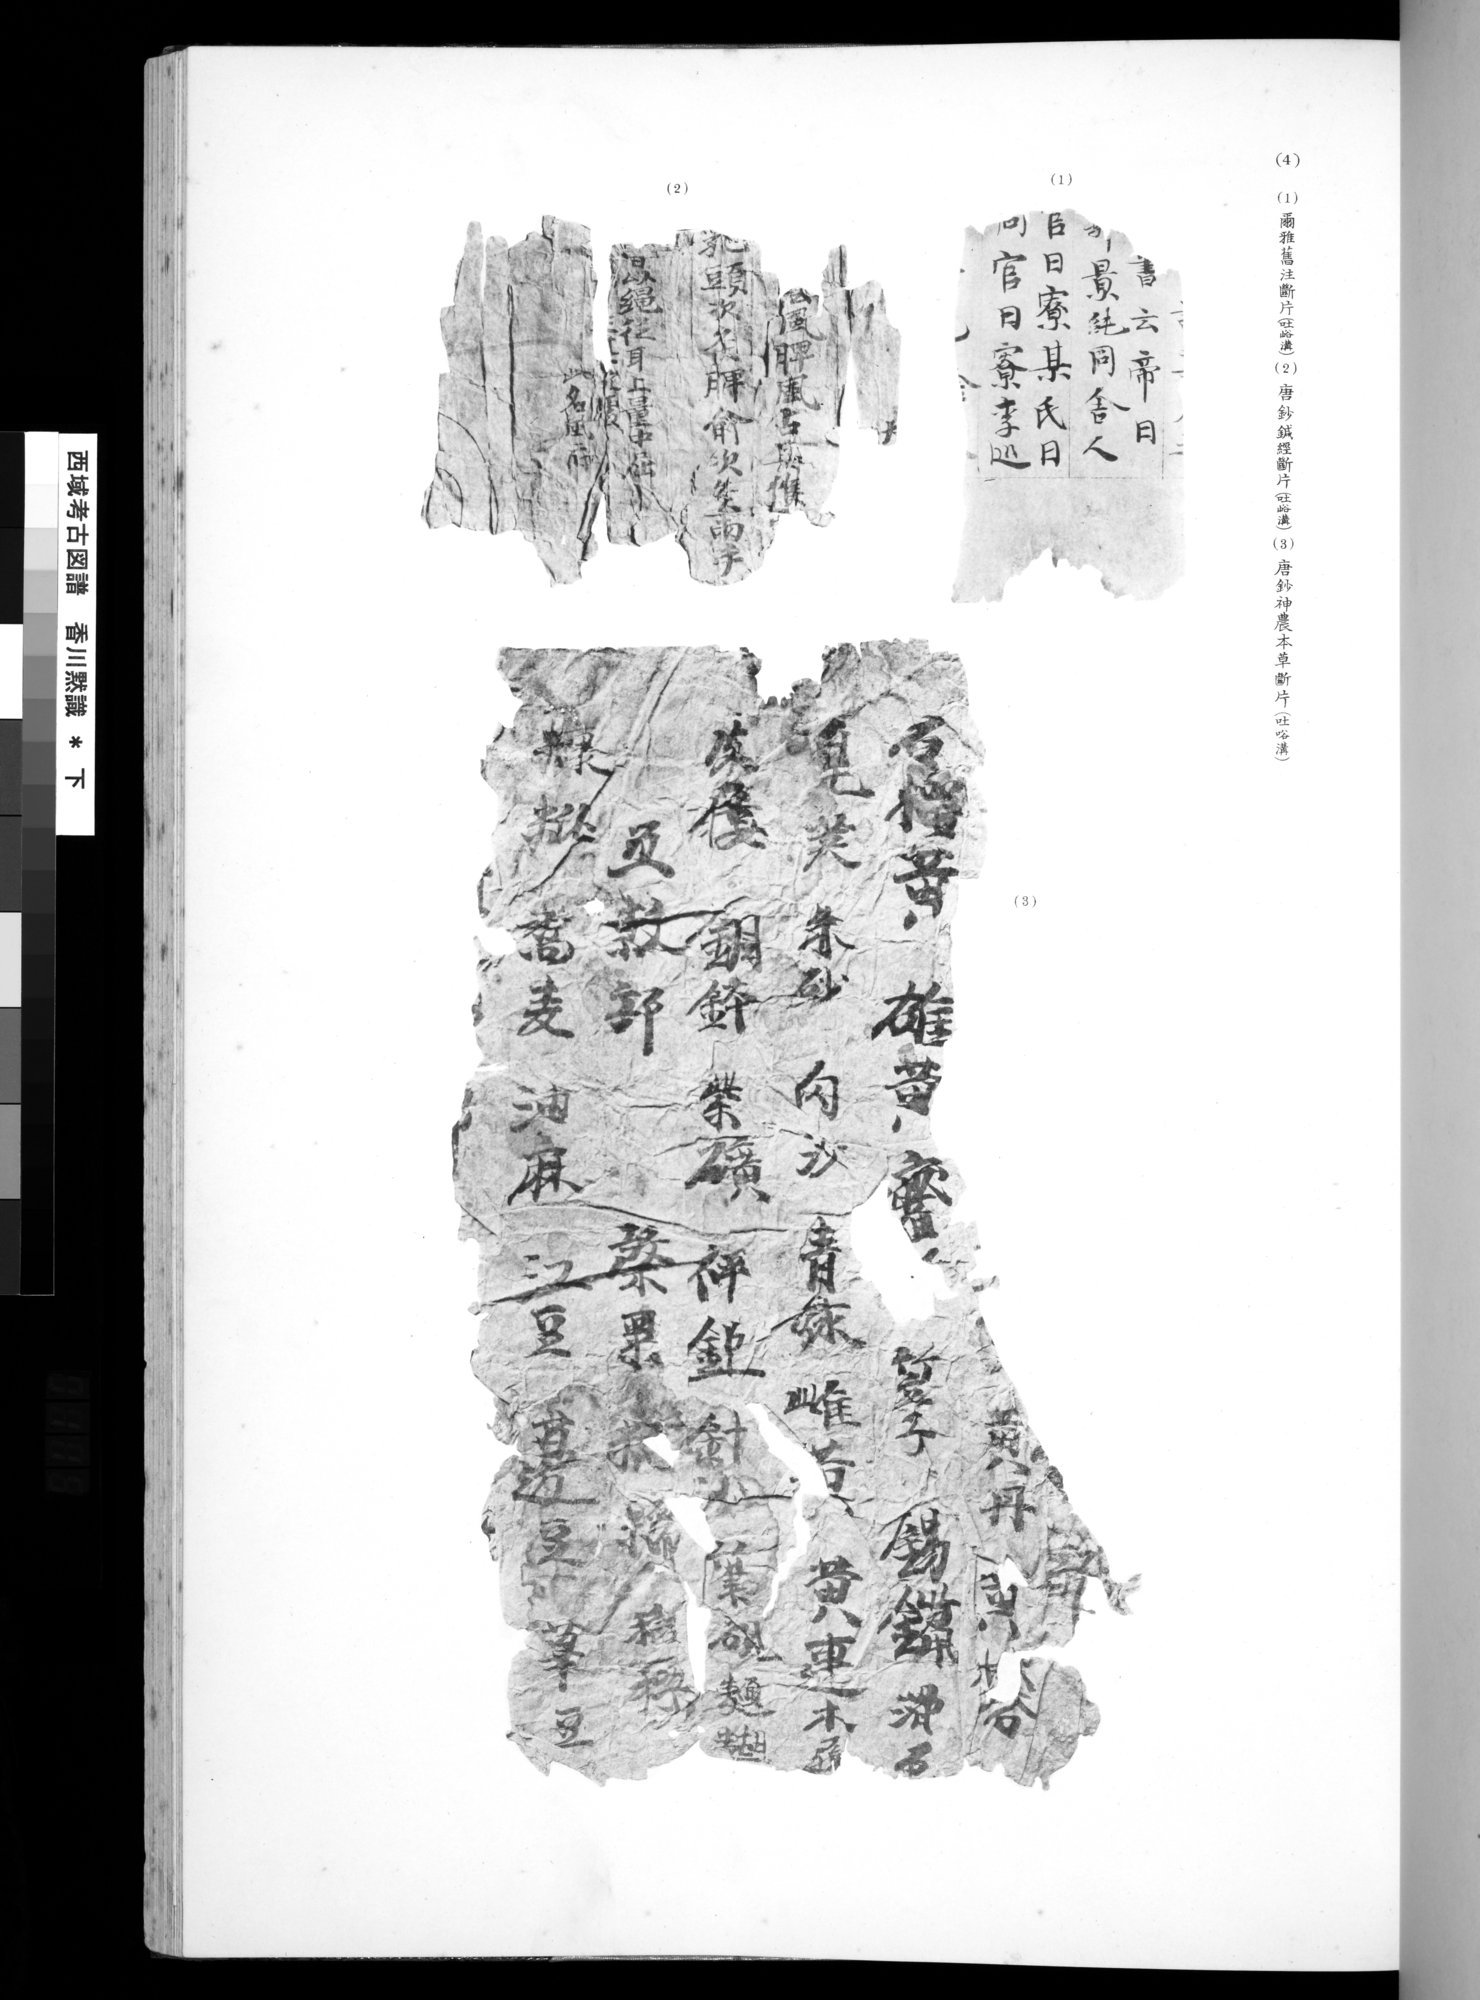 西域考古図譜 : vol.2 / 237 ページ（白黒高解像度画像）